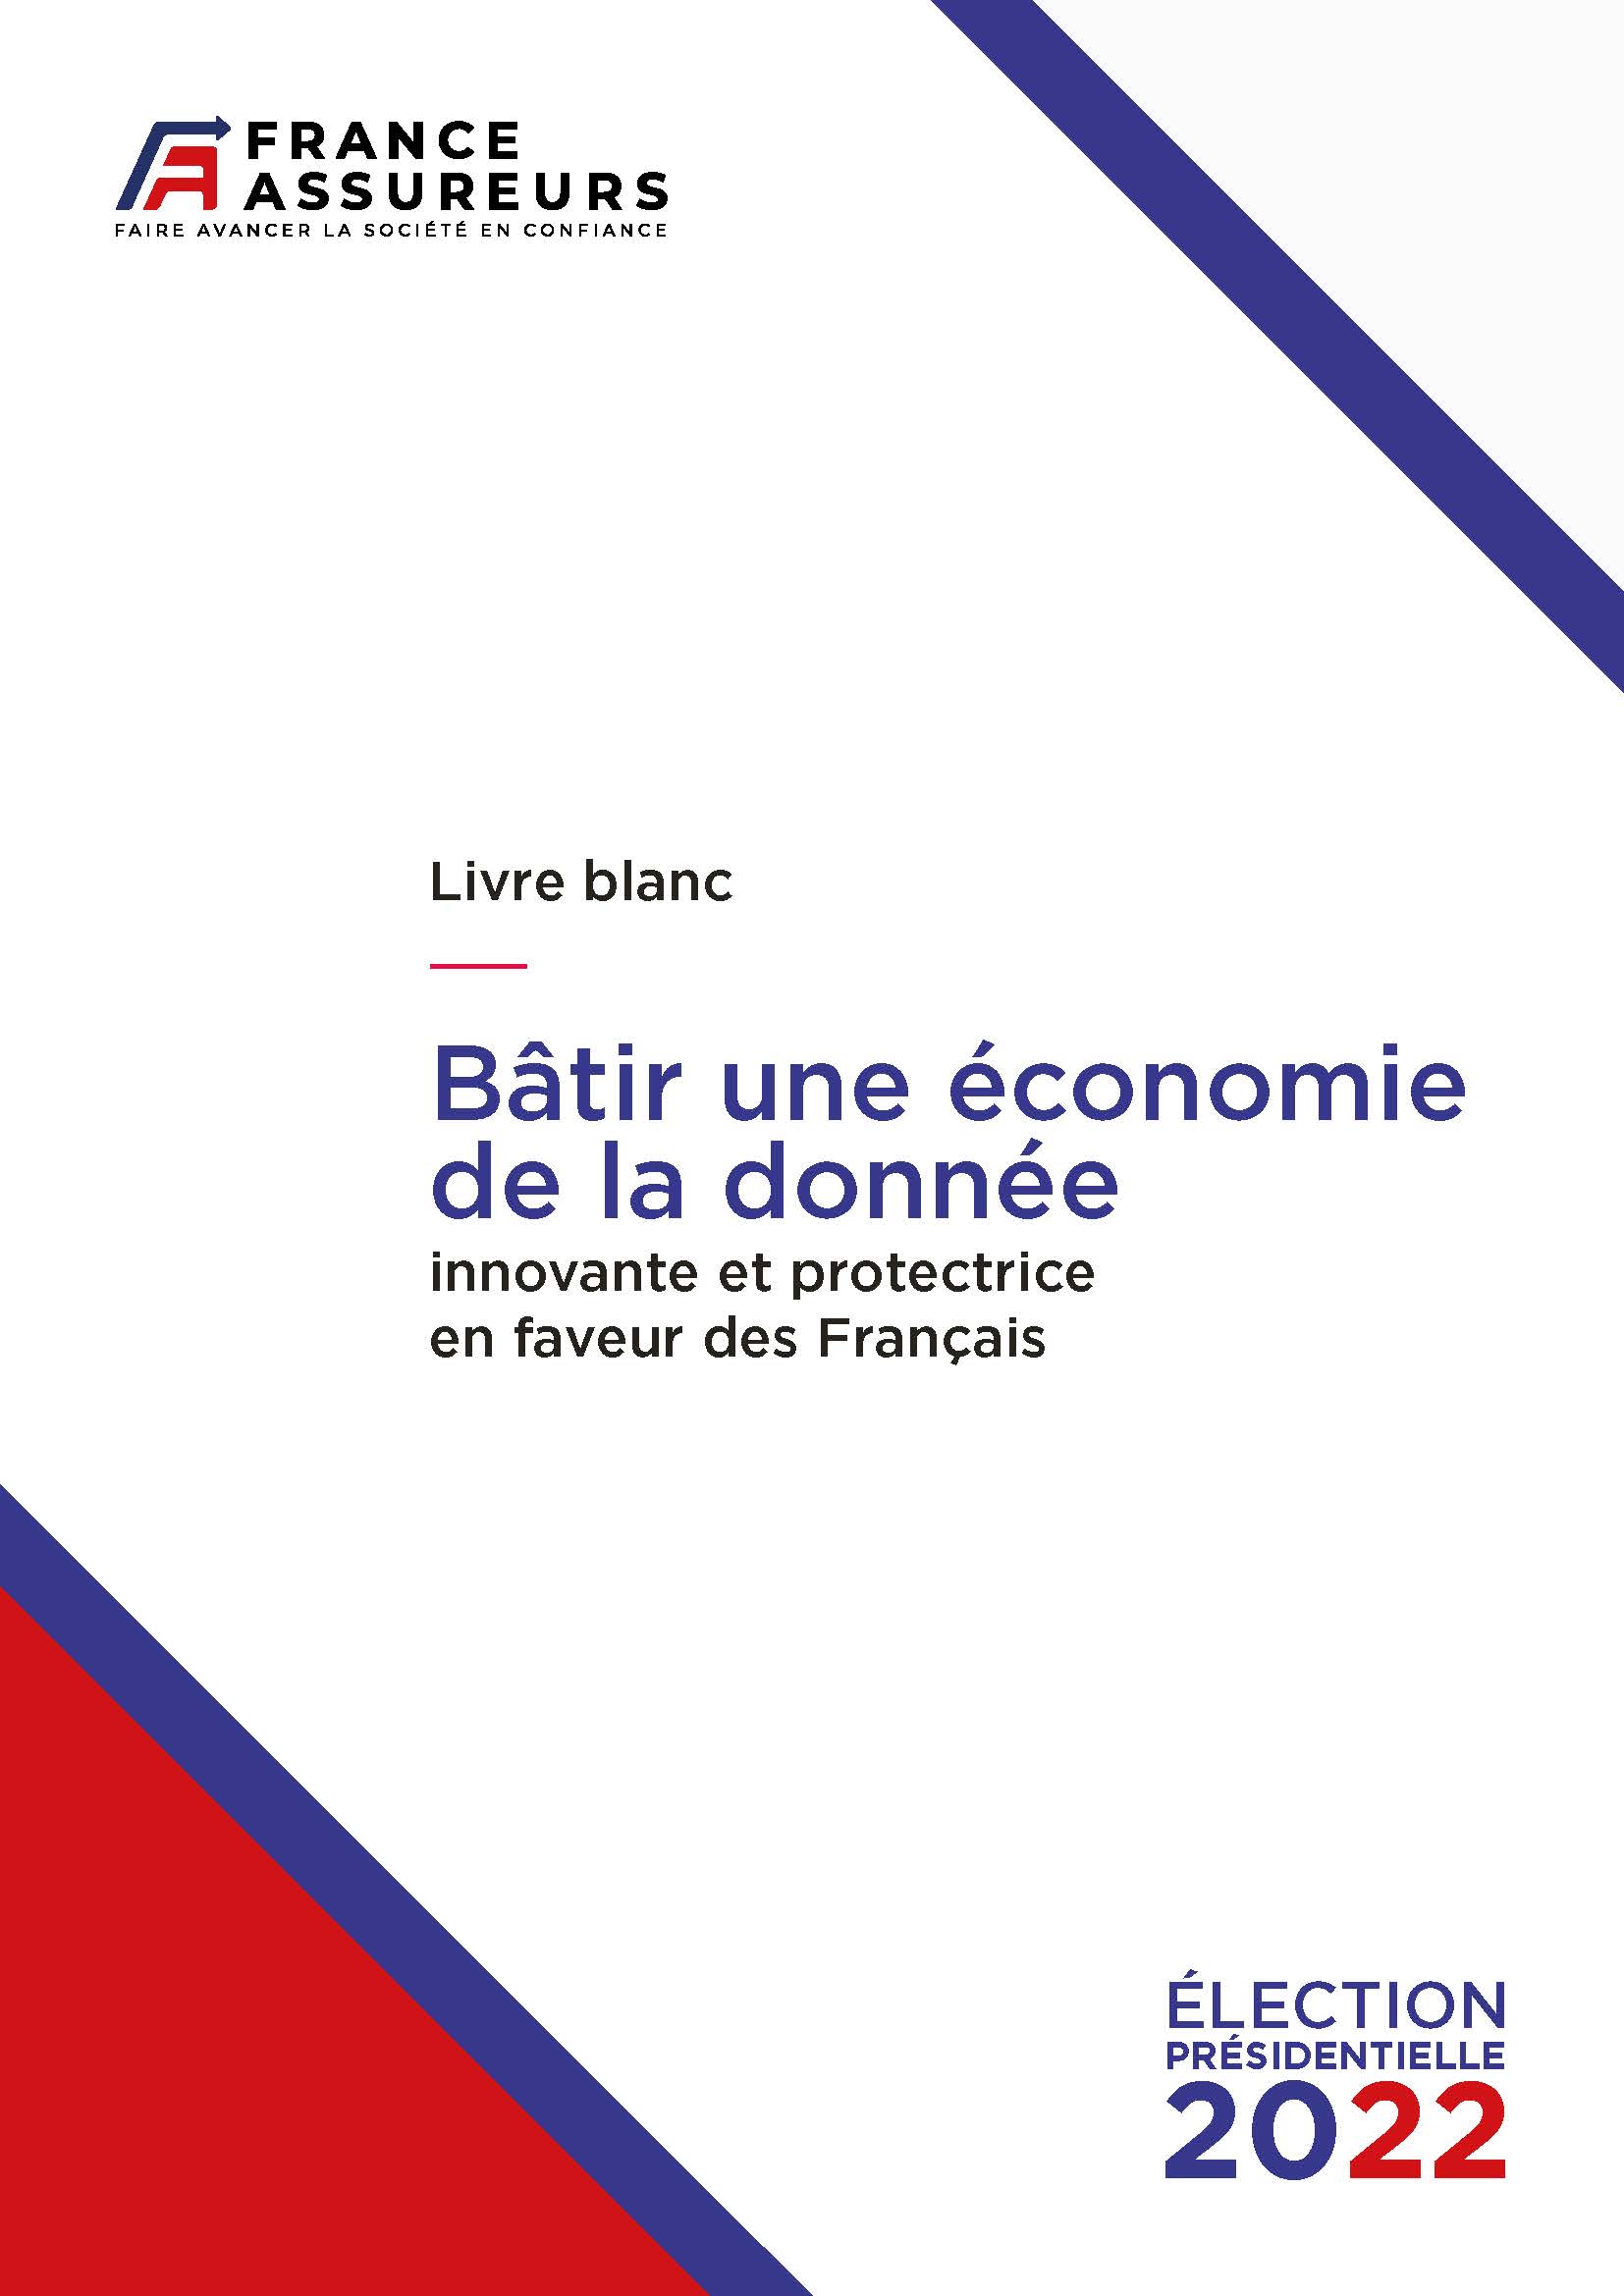 Livre blanc-Bâtir une économie de la donnée - France Assureurs